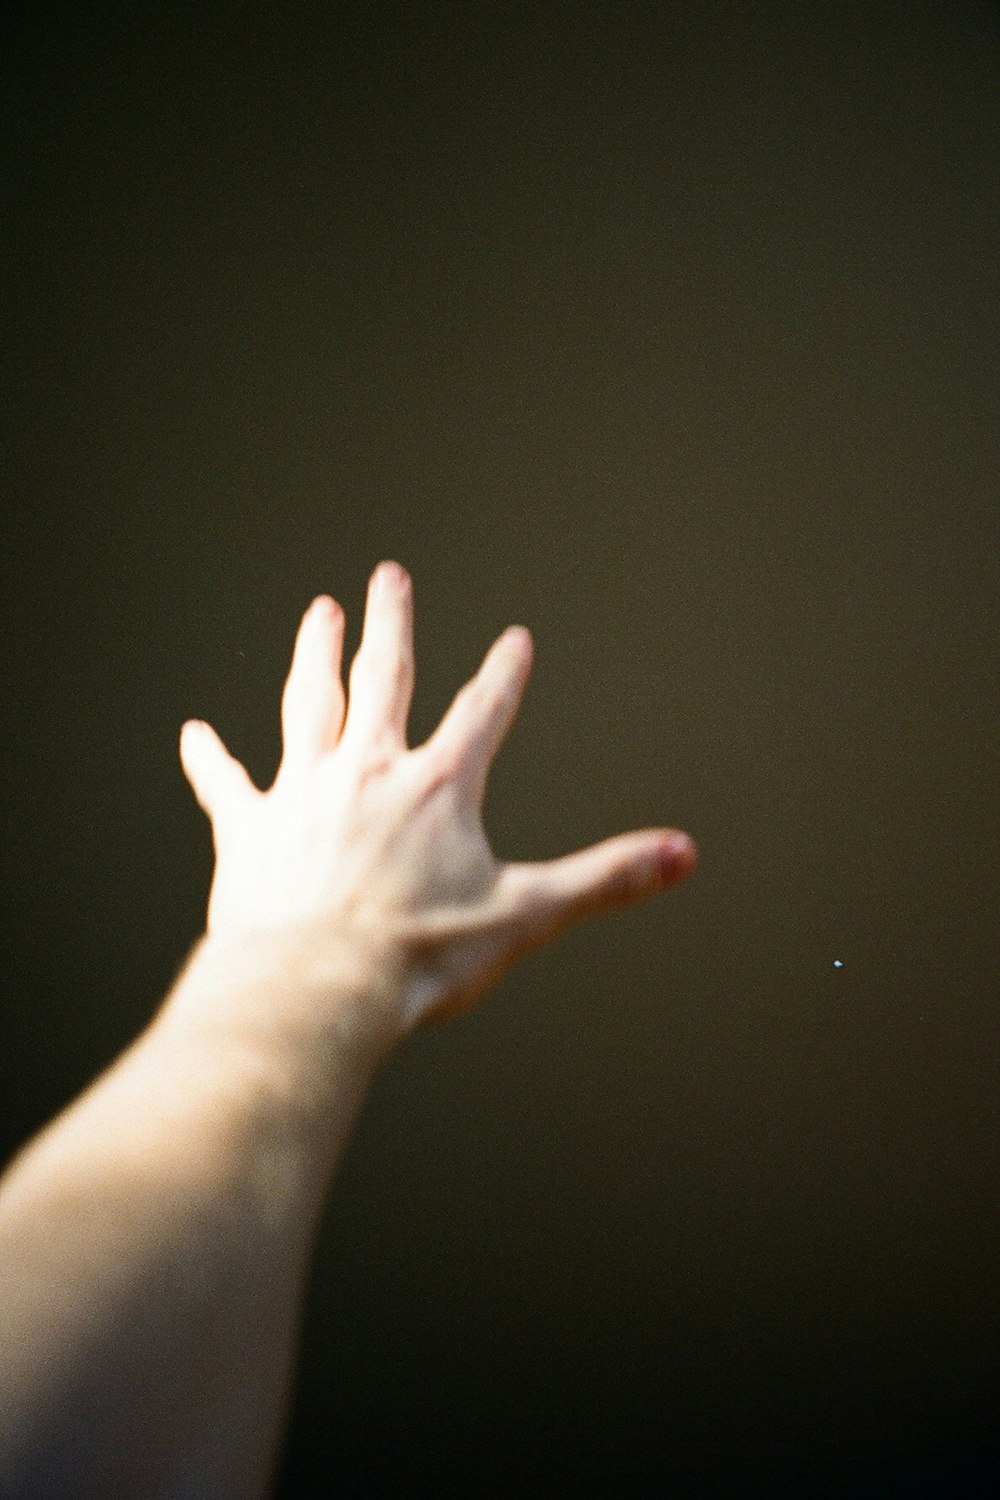 Die Hand einer Person greift nach oben, um einen Frisbee zu fangen